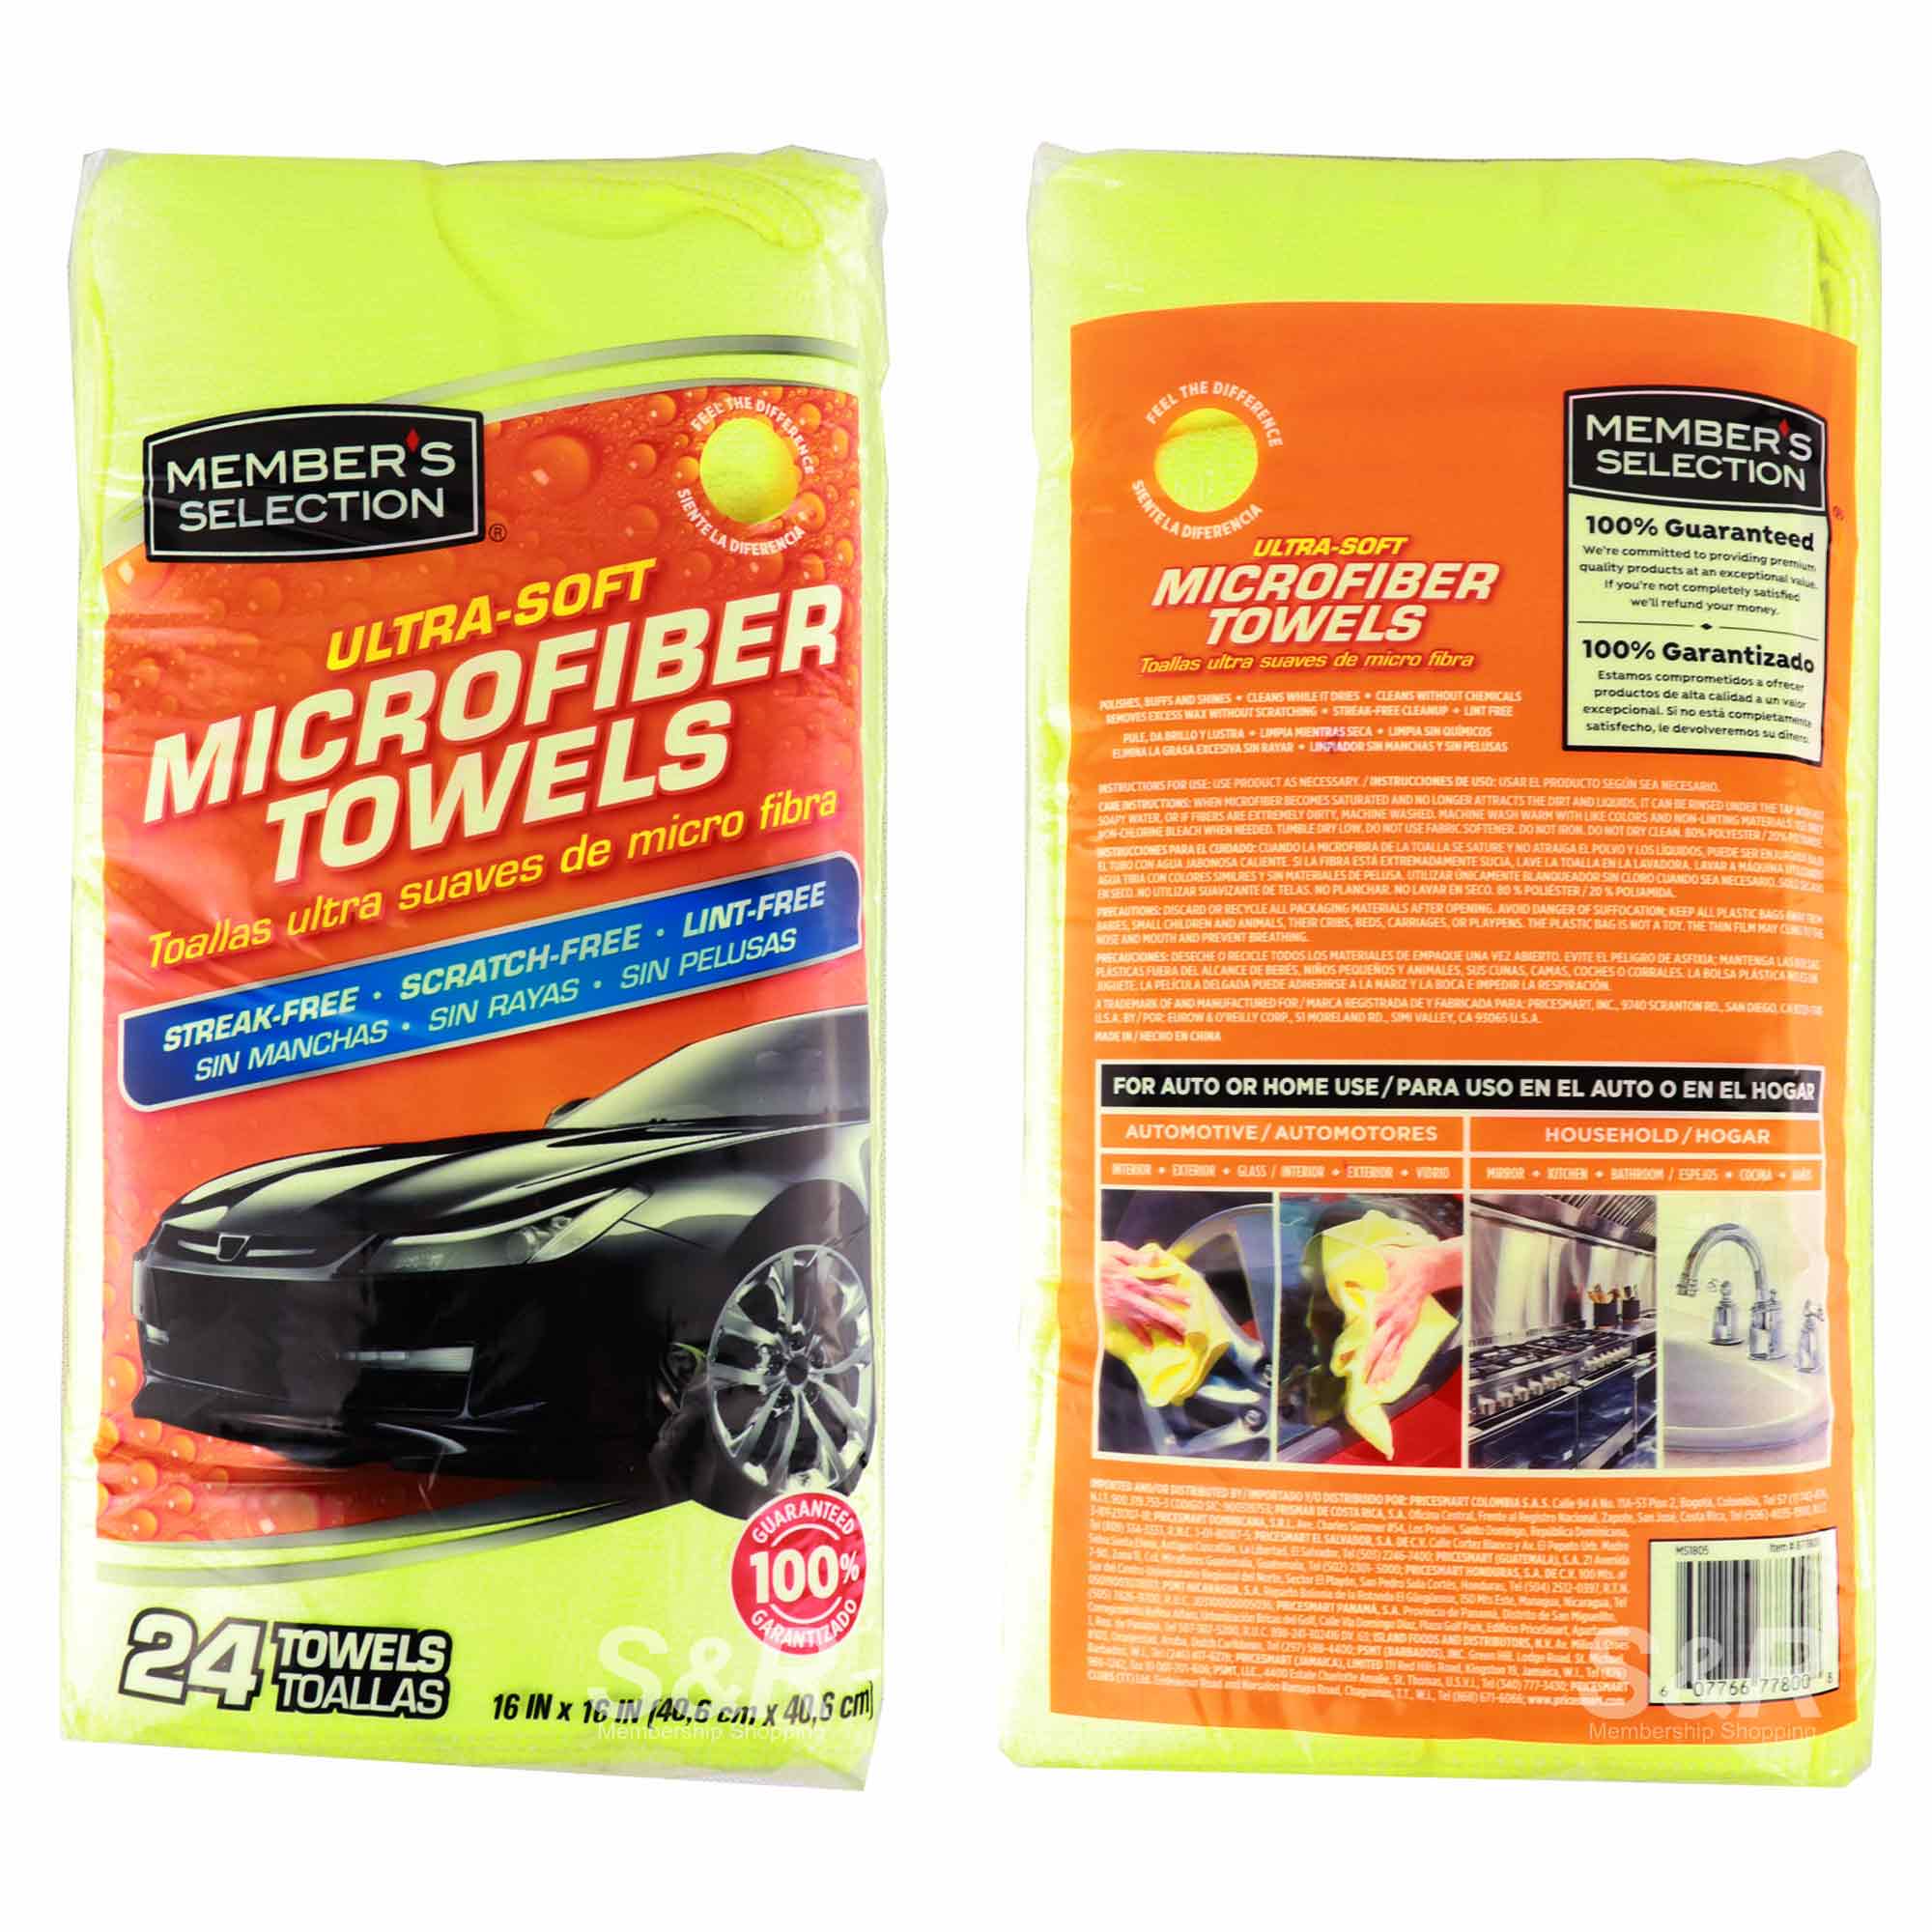 Ultra-Soft Microfiber Towels